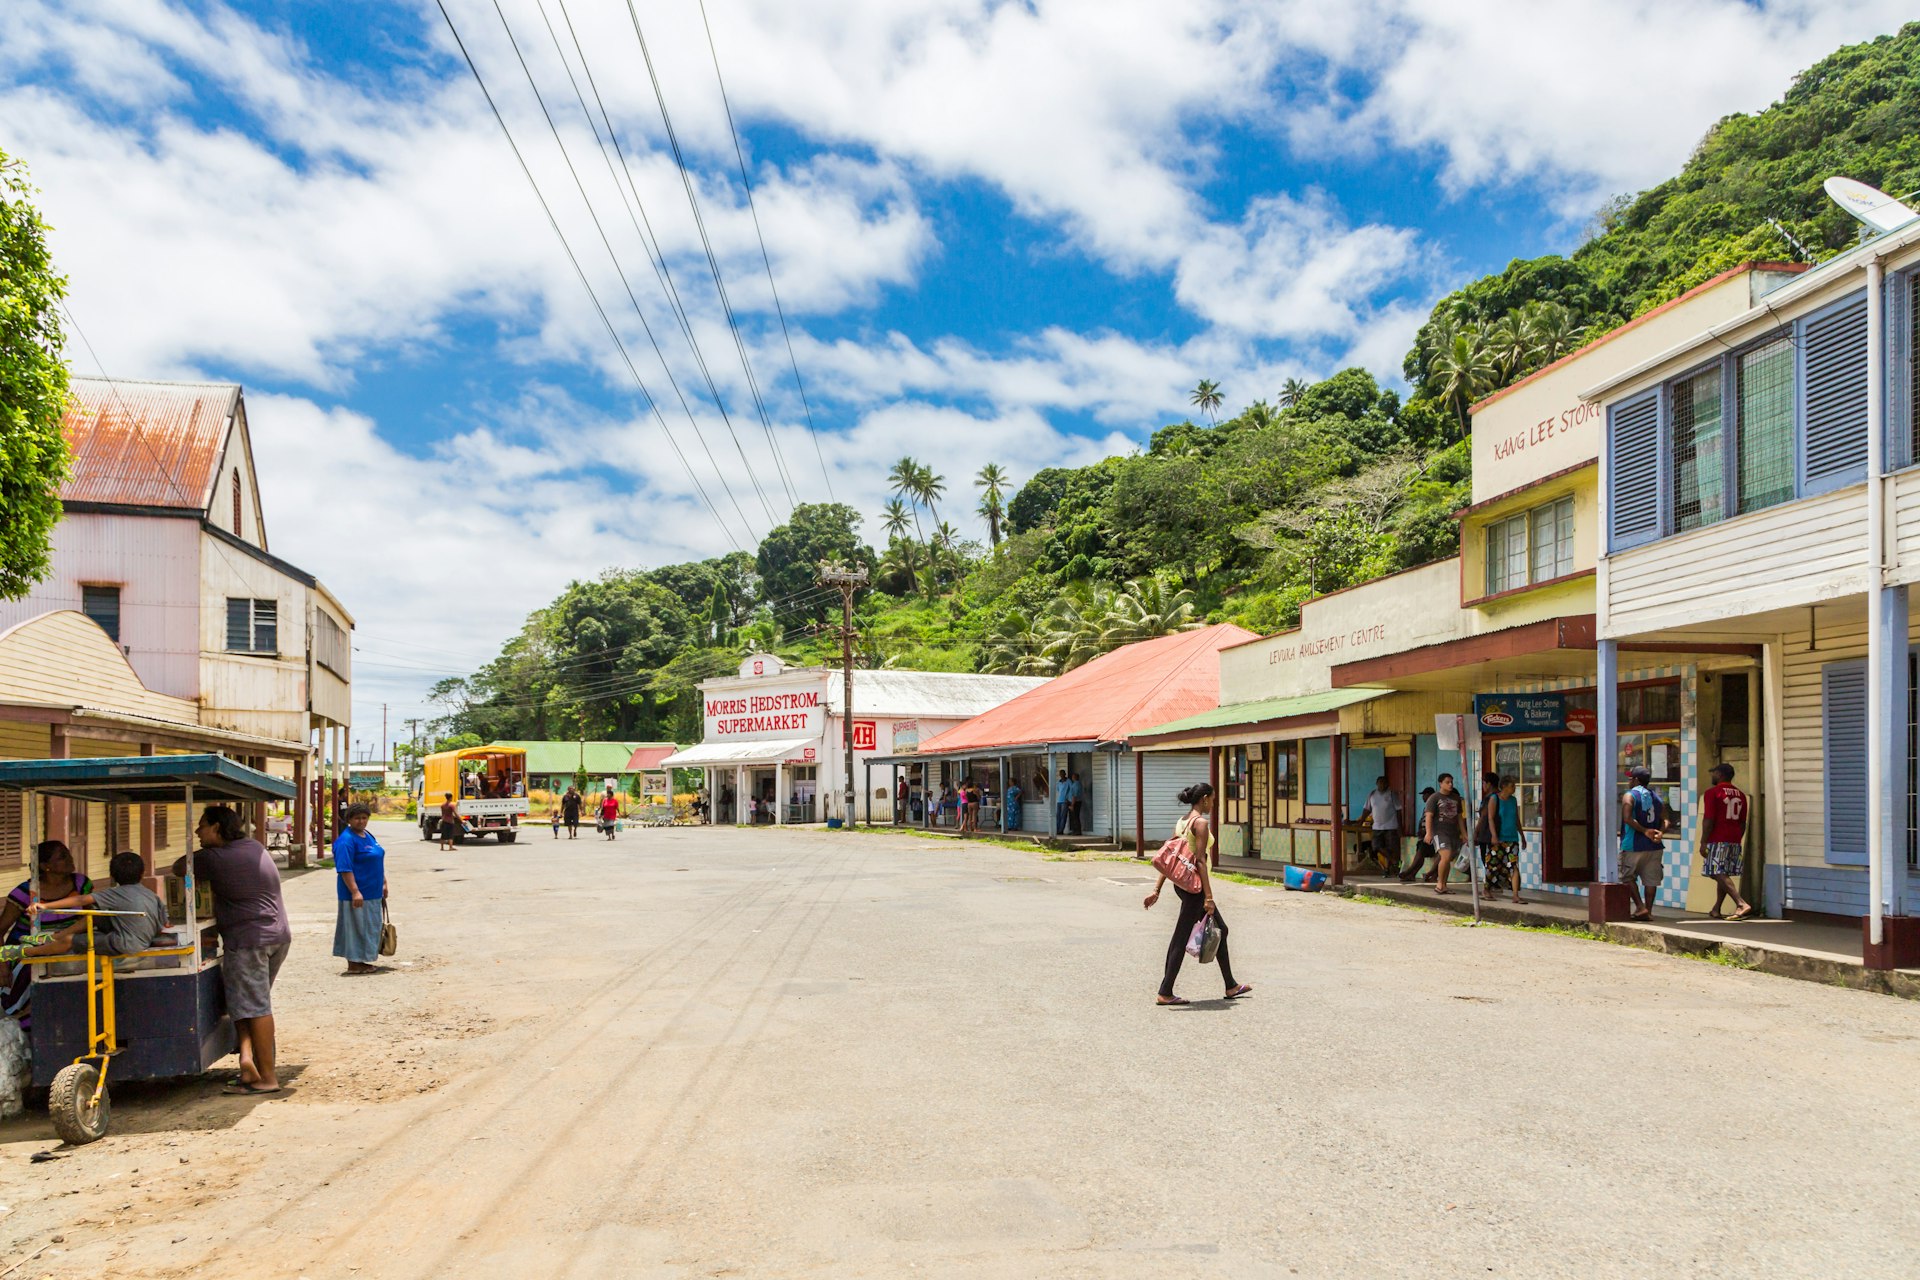 Colourful vibrant street of old colonial capital of Fiji - Levuka town, Ovalau island, 